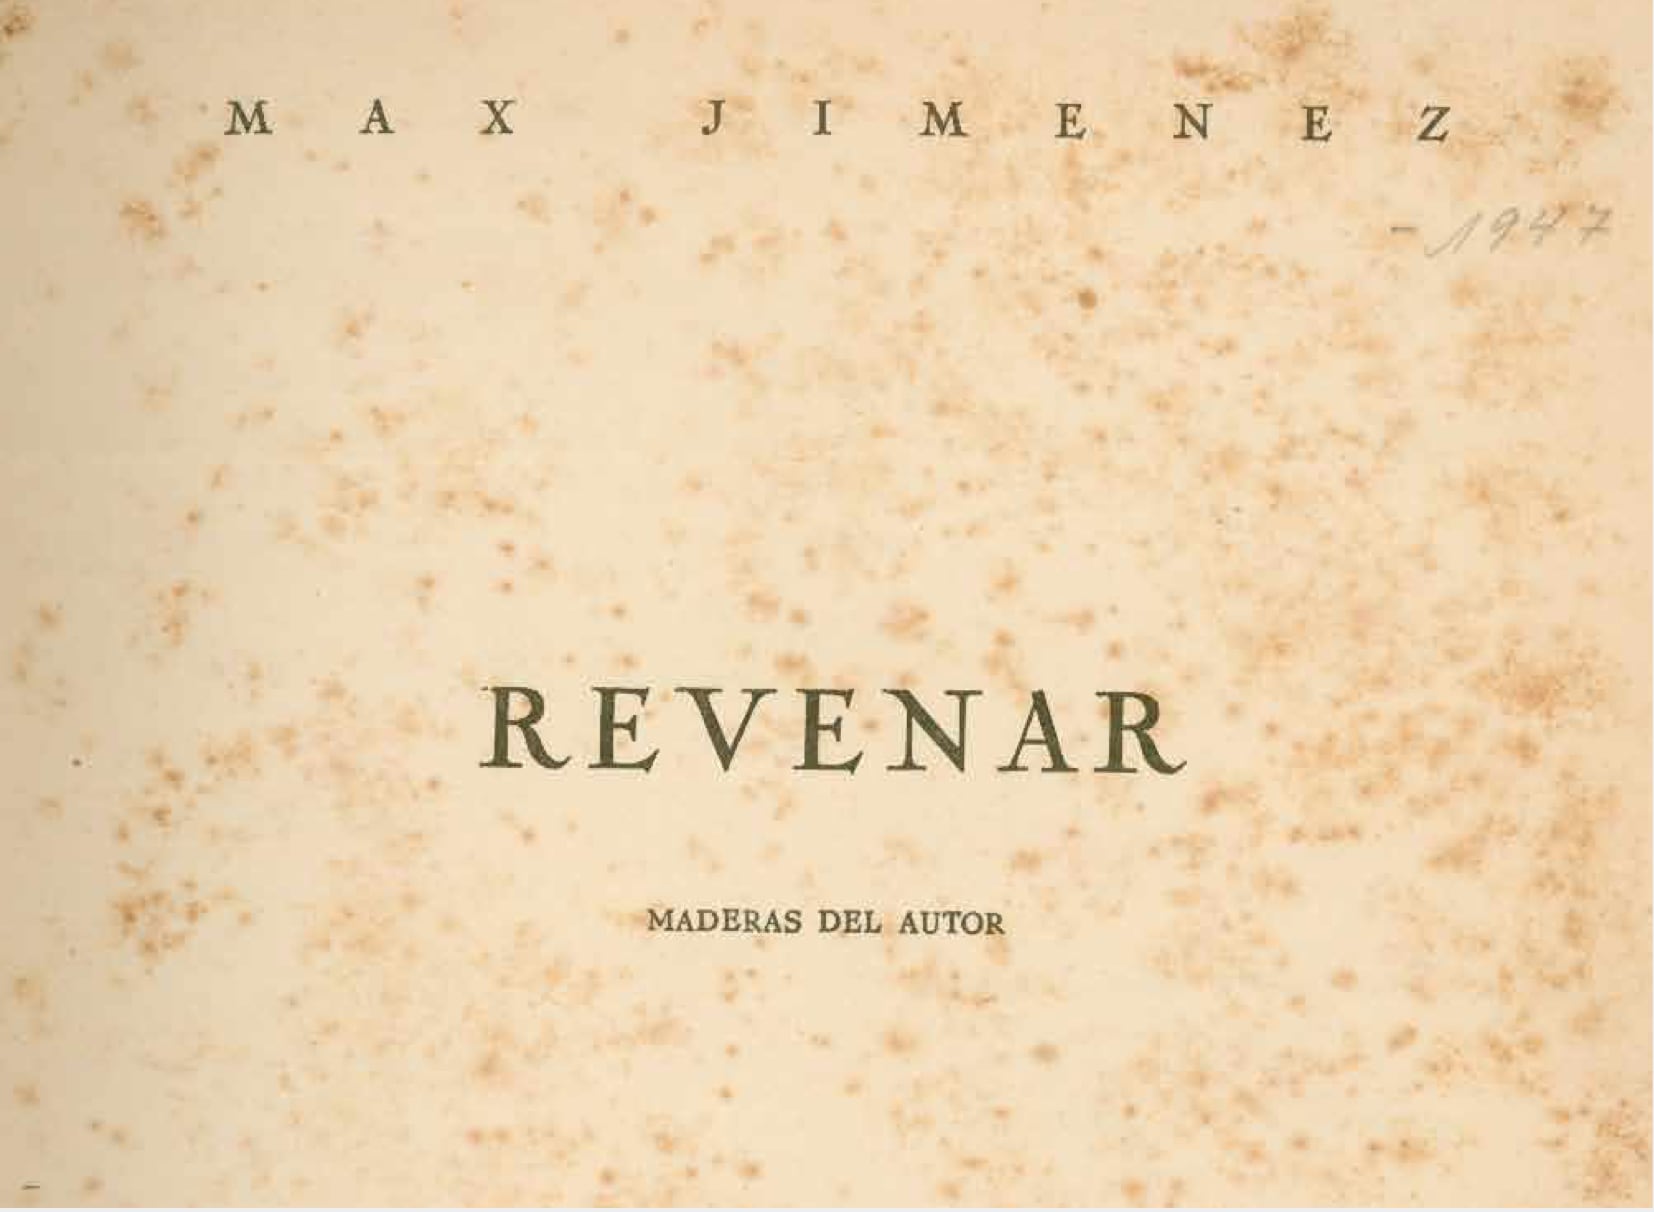 Revenar es una obra de Max Jiménez de 1936 en la que el autor revela las angustias que le asediaban.